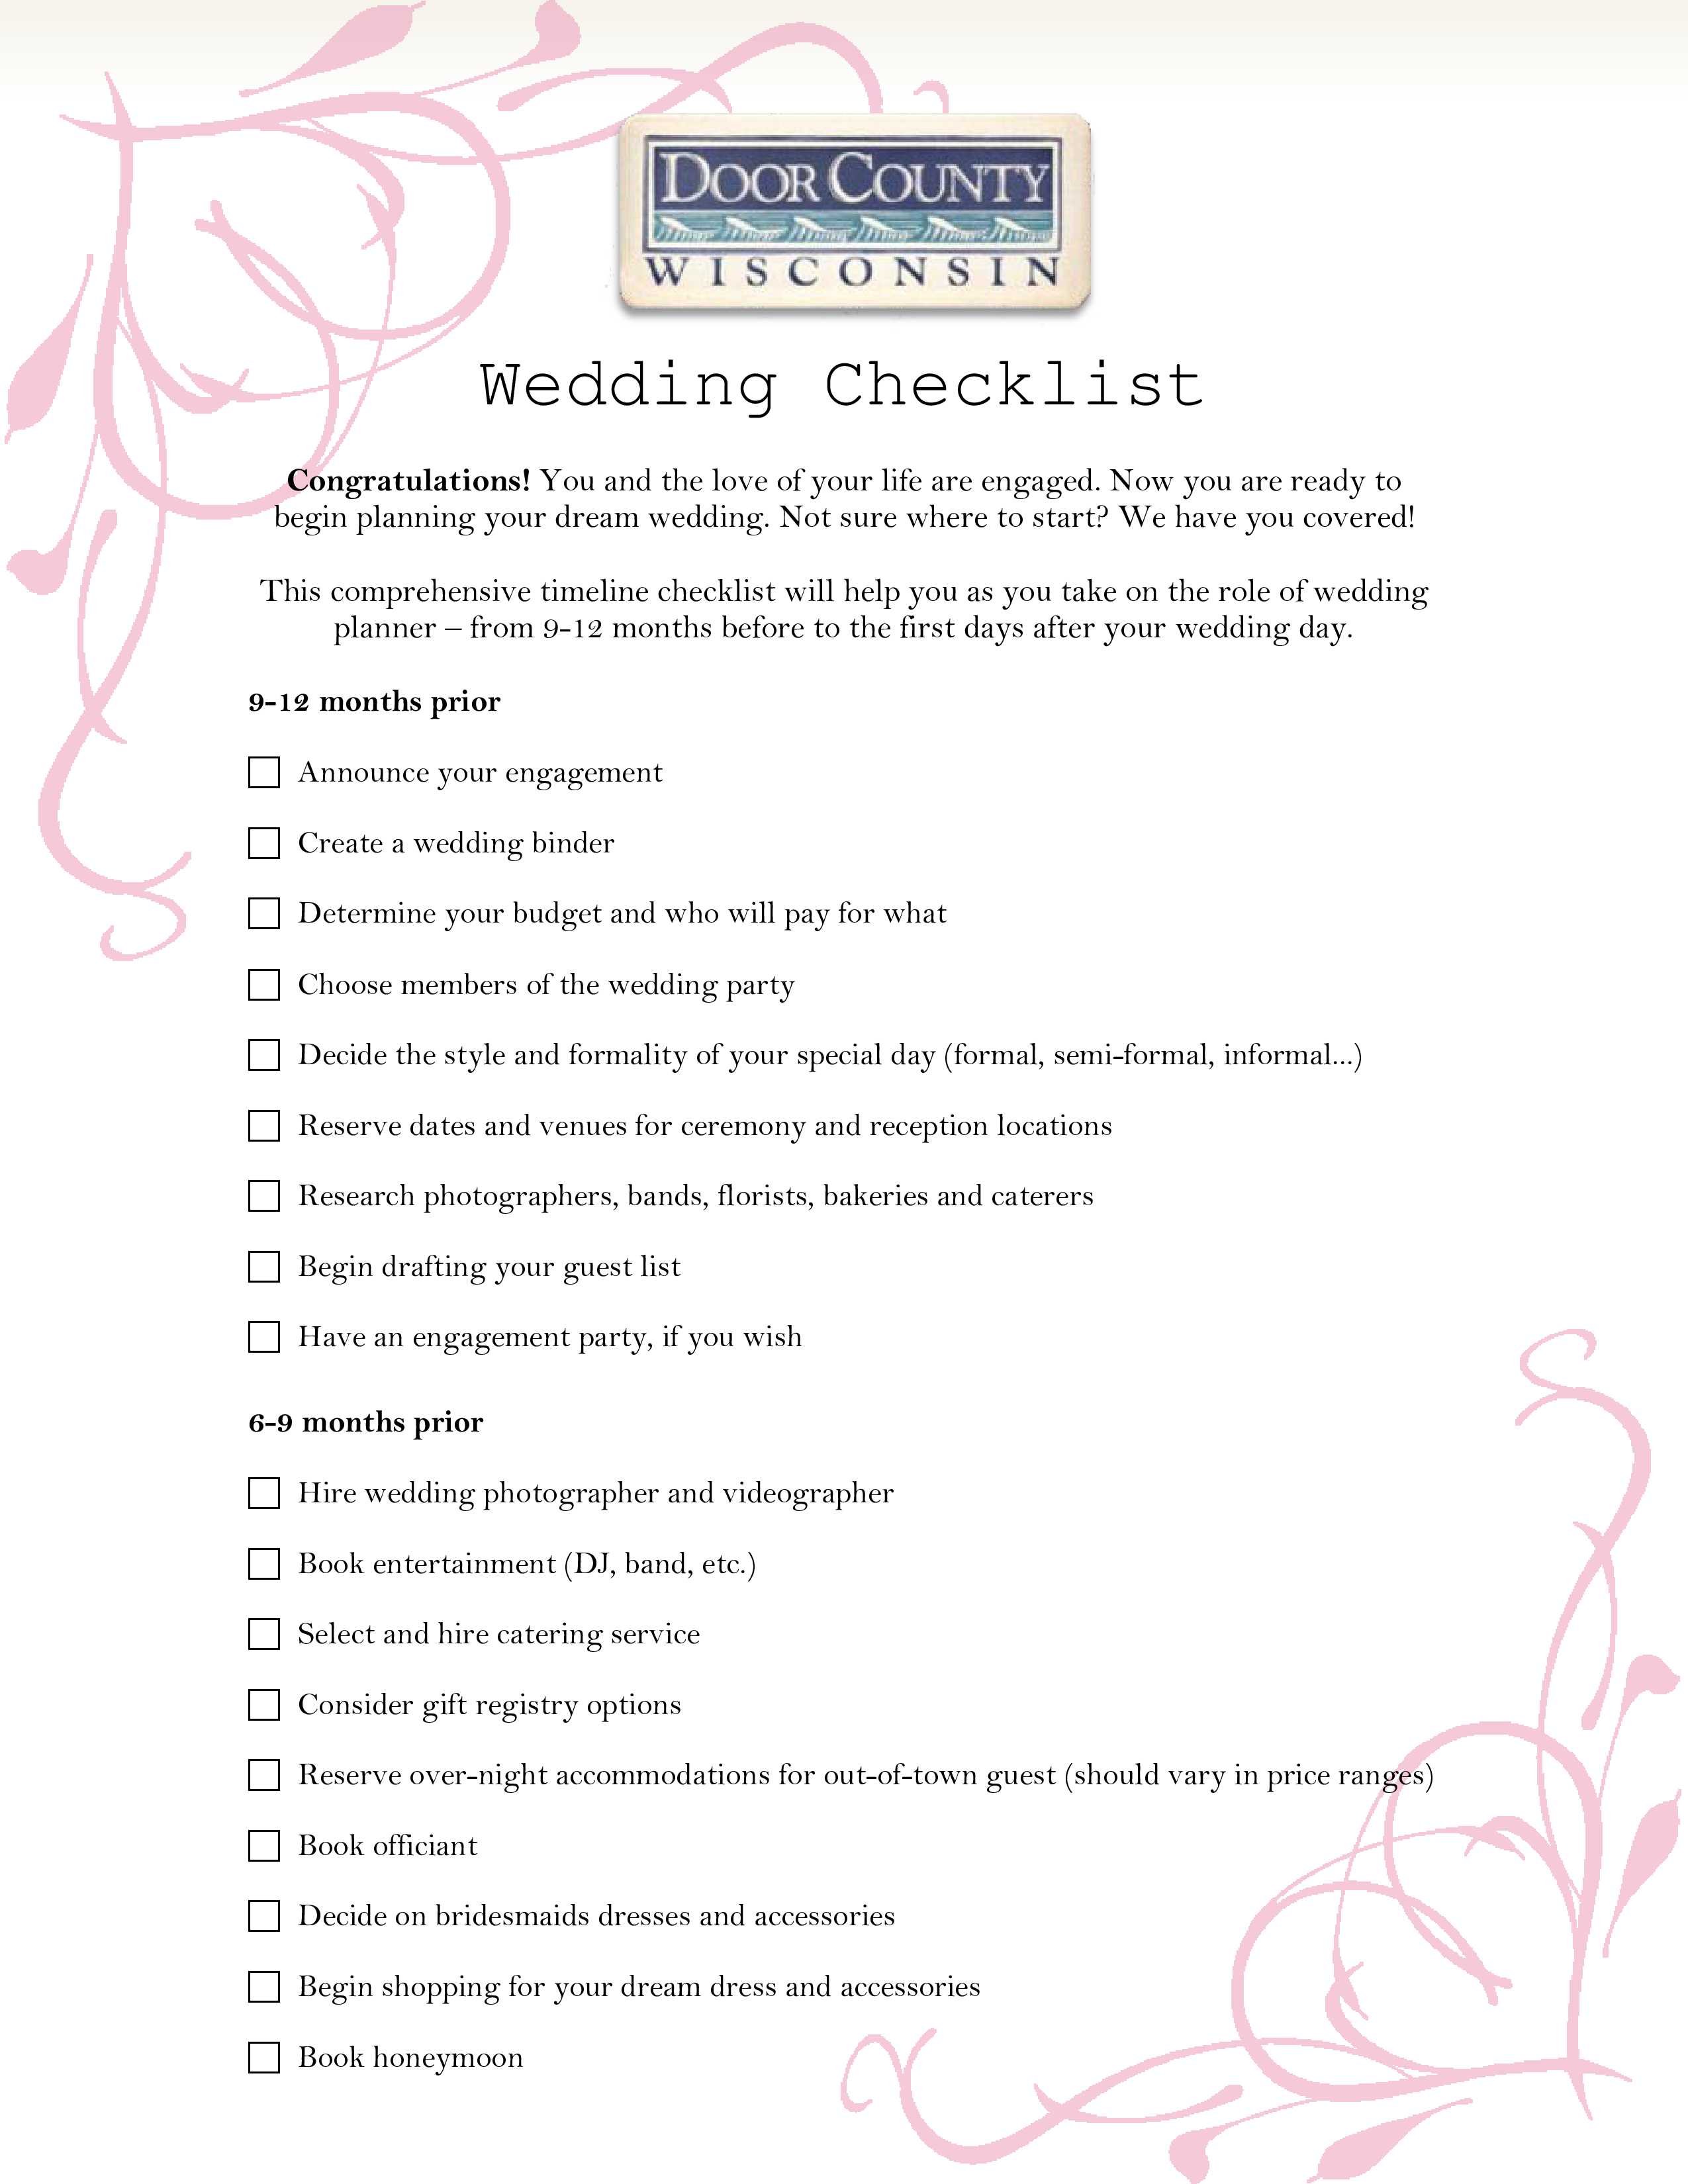 wedding day items checklist plantilla imagen principal